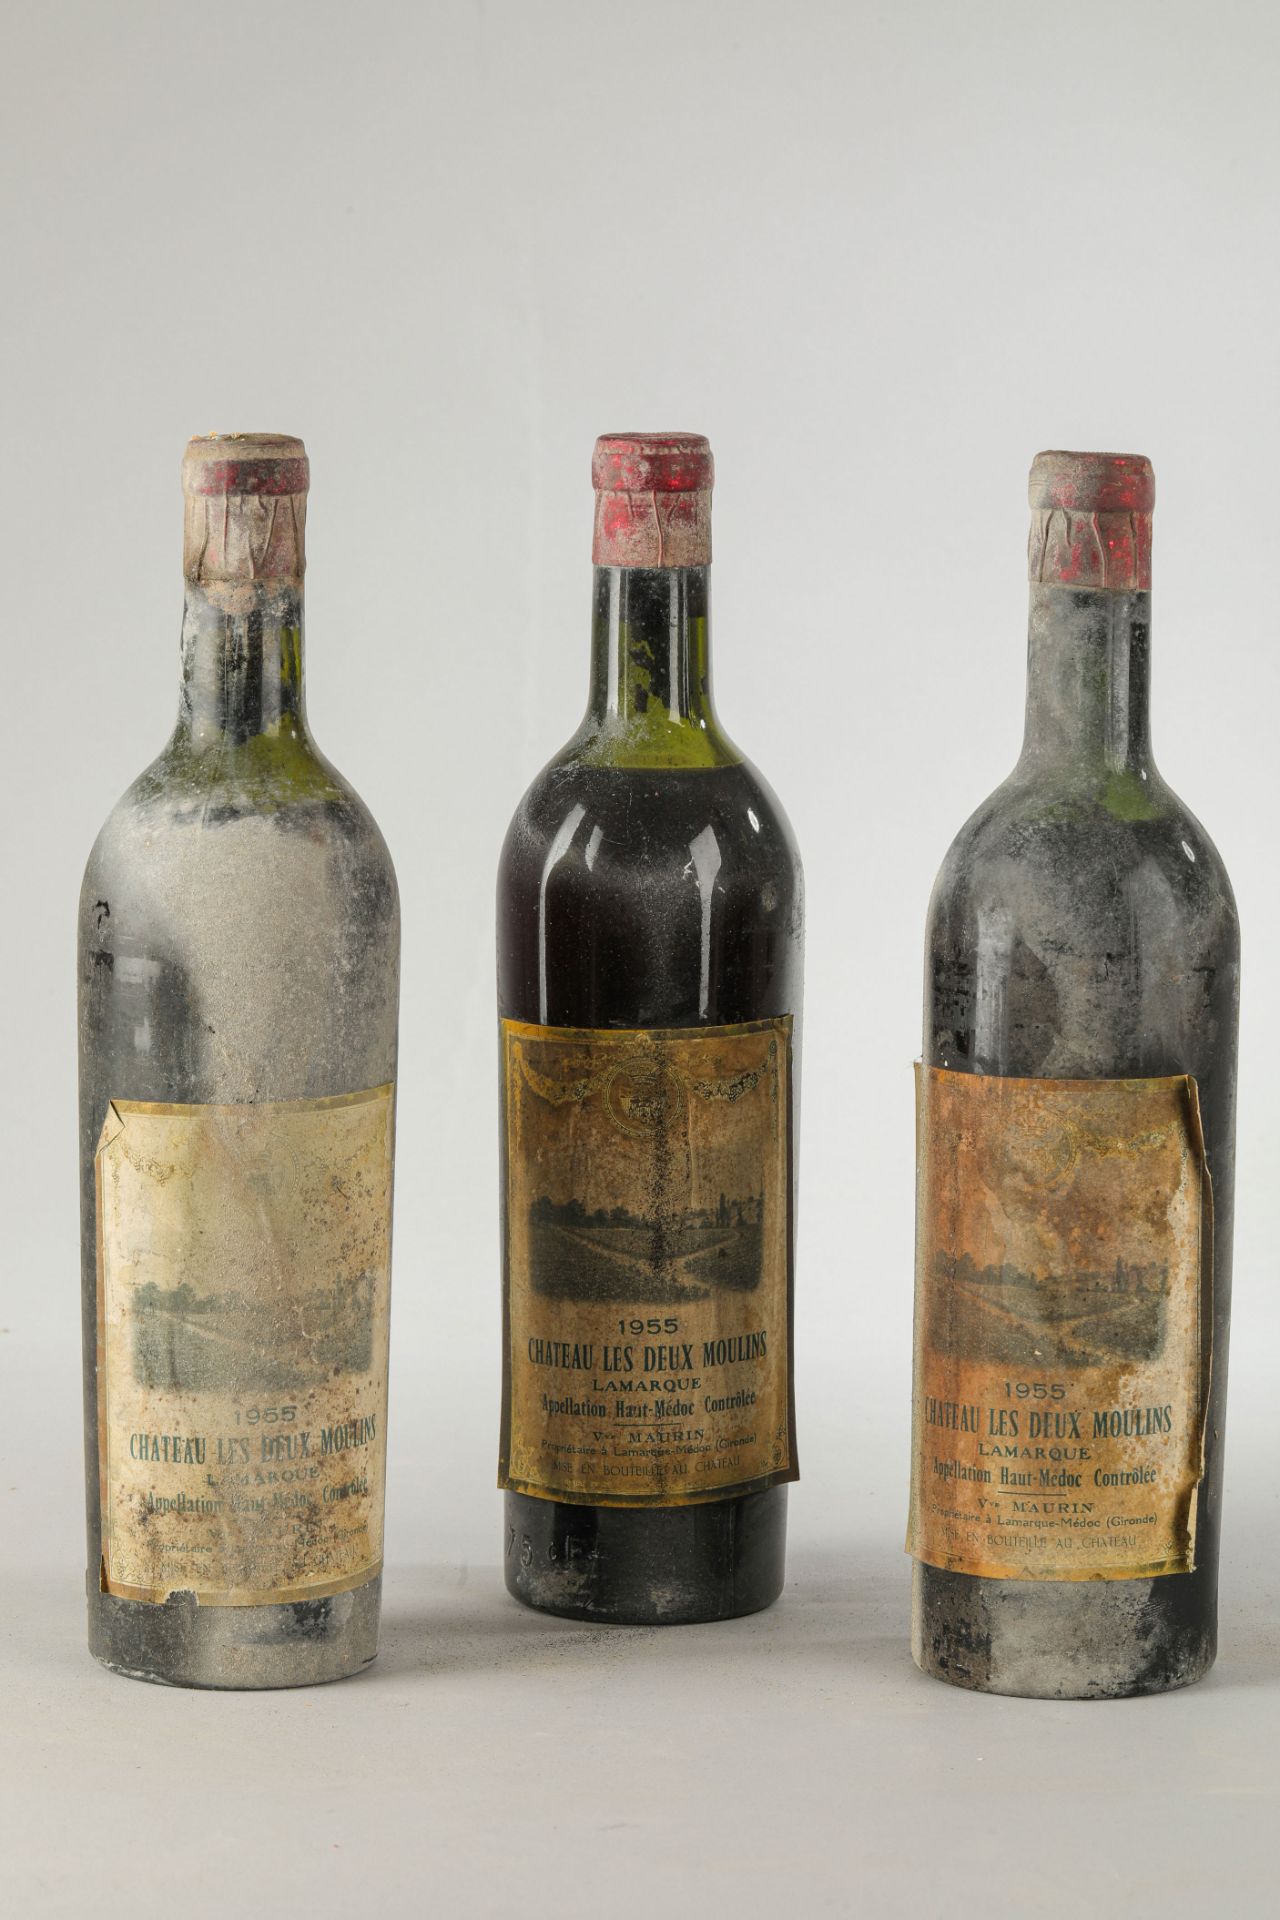 CHÂTEAU LES DEUX MOULINS 1955 3 bouteilles Haut Médoc